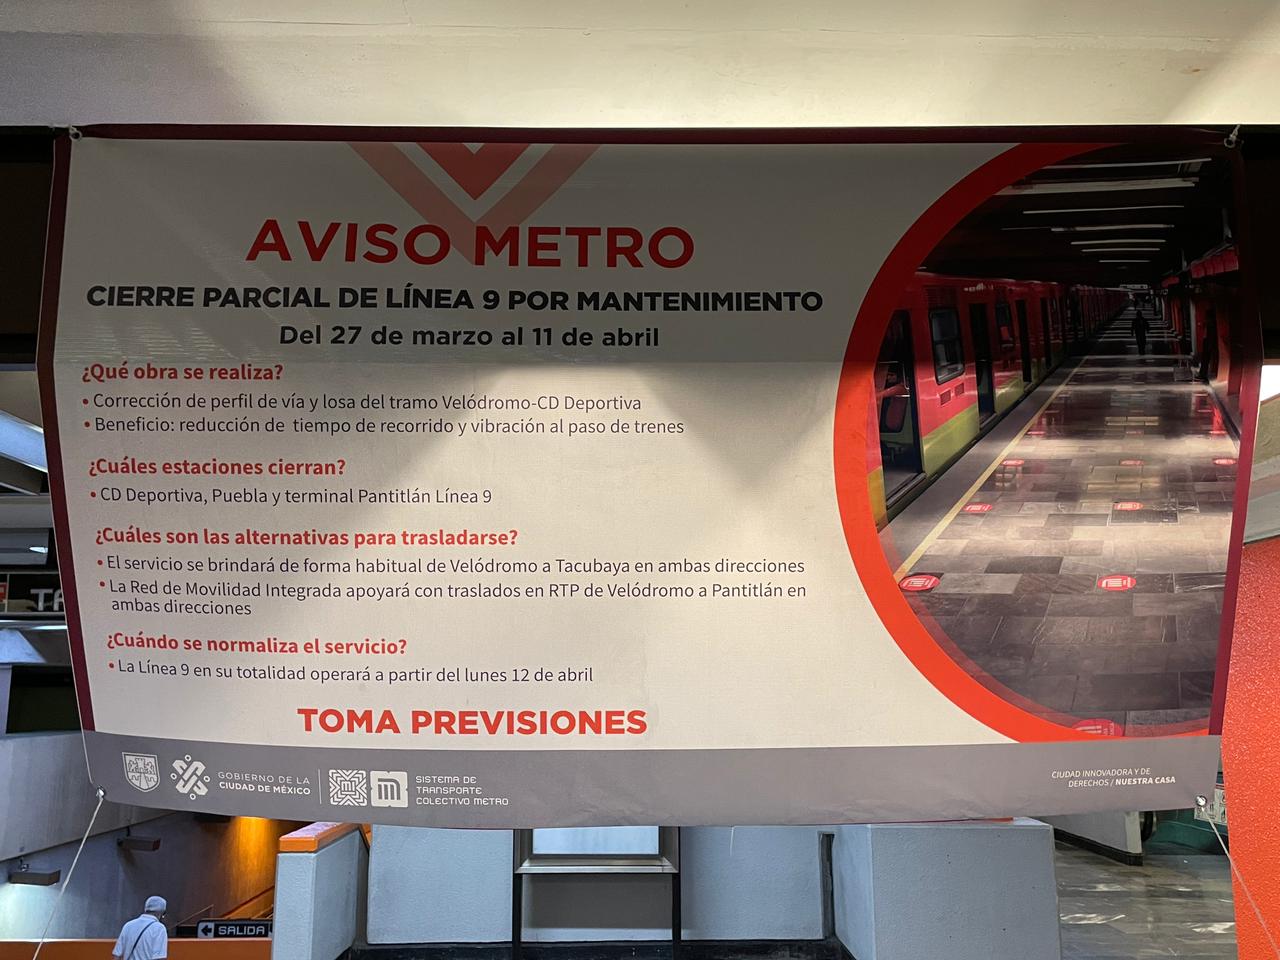 Ciudad Deportiva, Puebla y Pantitlán de la Línea 9, estarán sin servicio a  partir del sábado 27 de marzo y hasta el 11 de abril